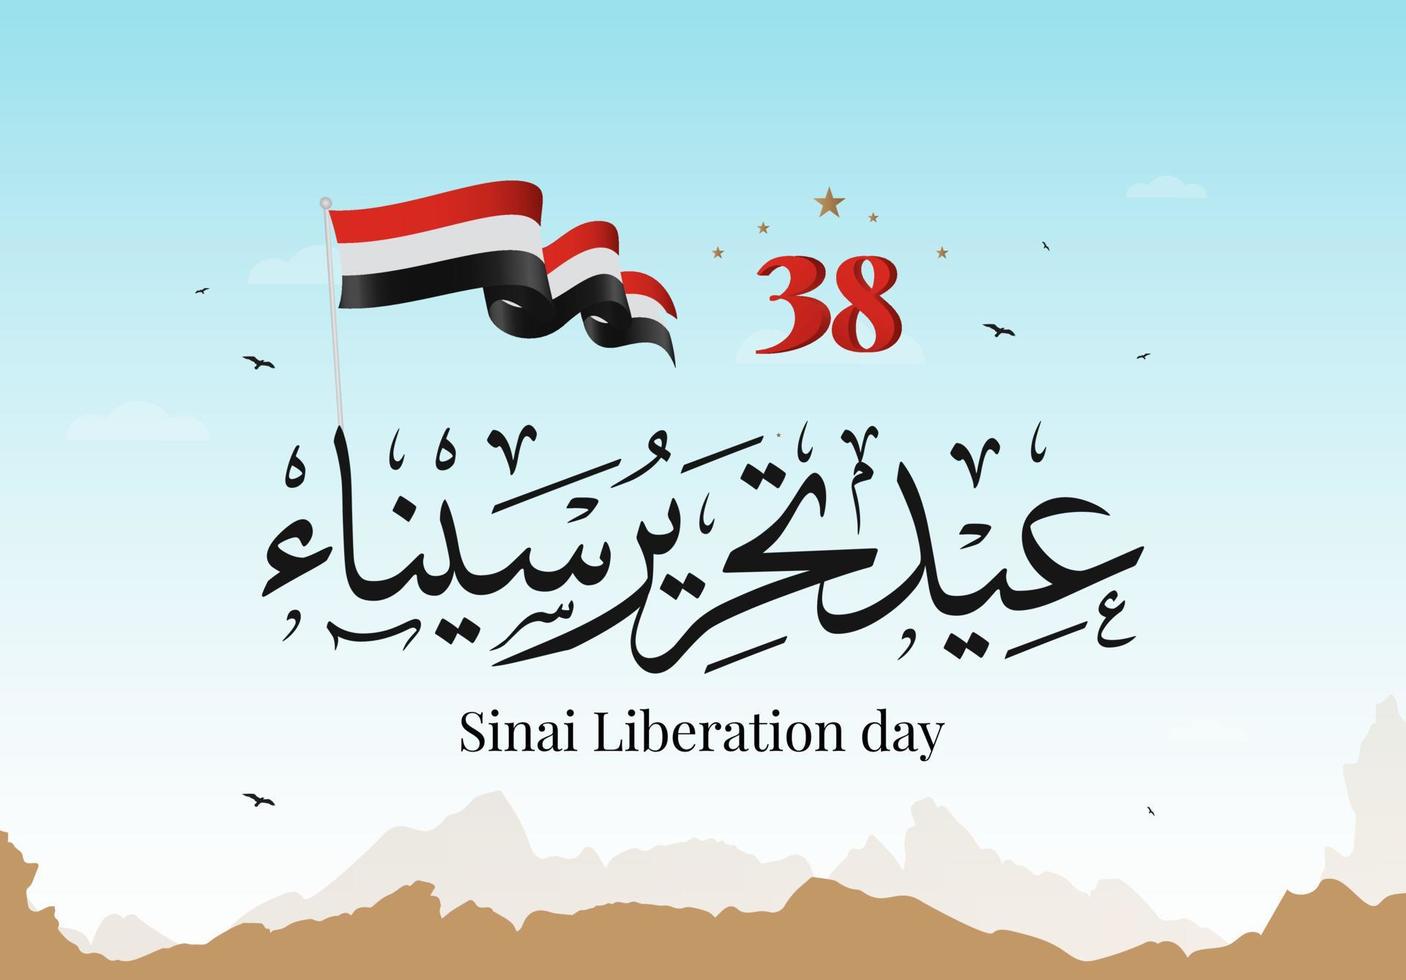 Egypte 6 oktober oorlog 1973 Arabische kalligrafie vectorillustratie. sinai onafhankelijkheidsdag, sinai bevrijdingsdag 25 april. vector